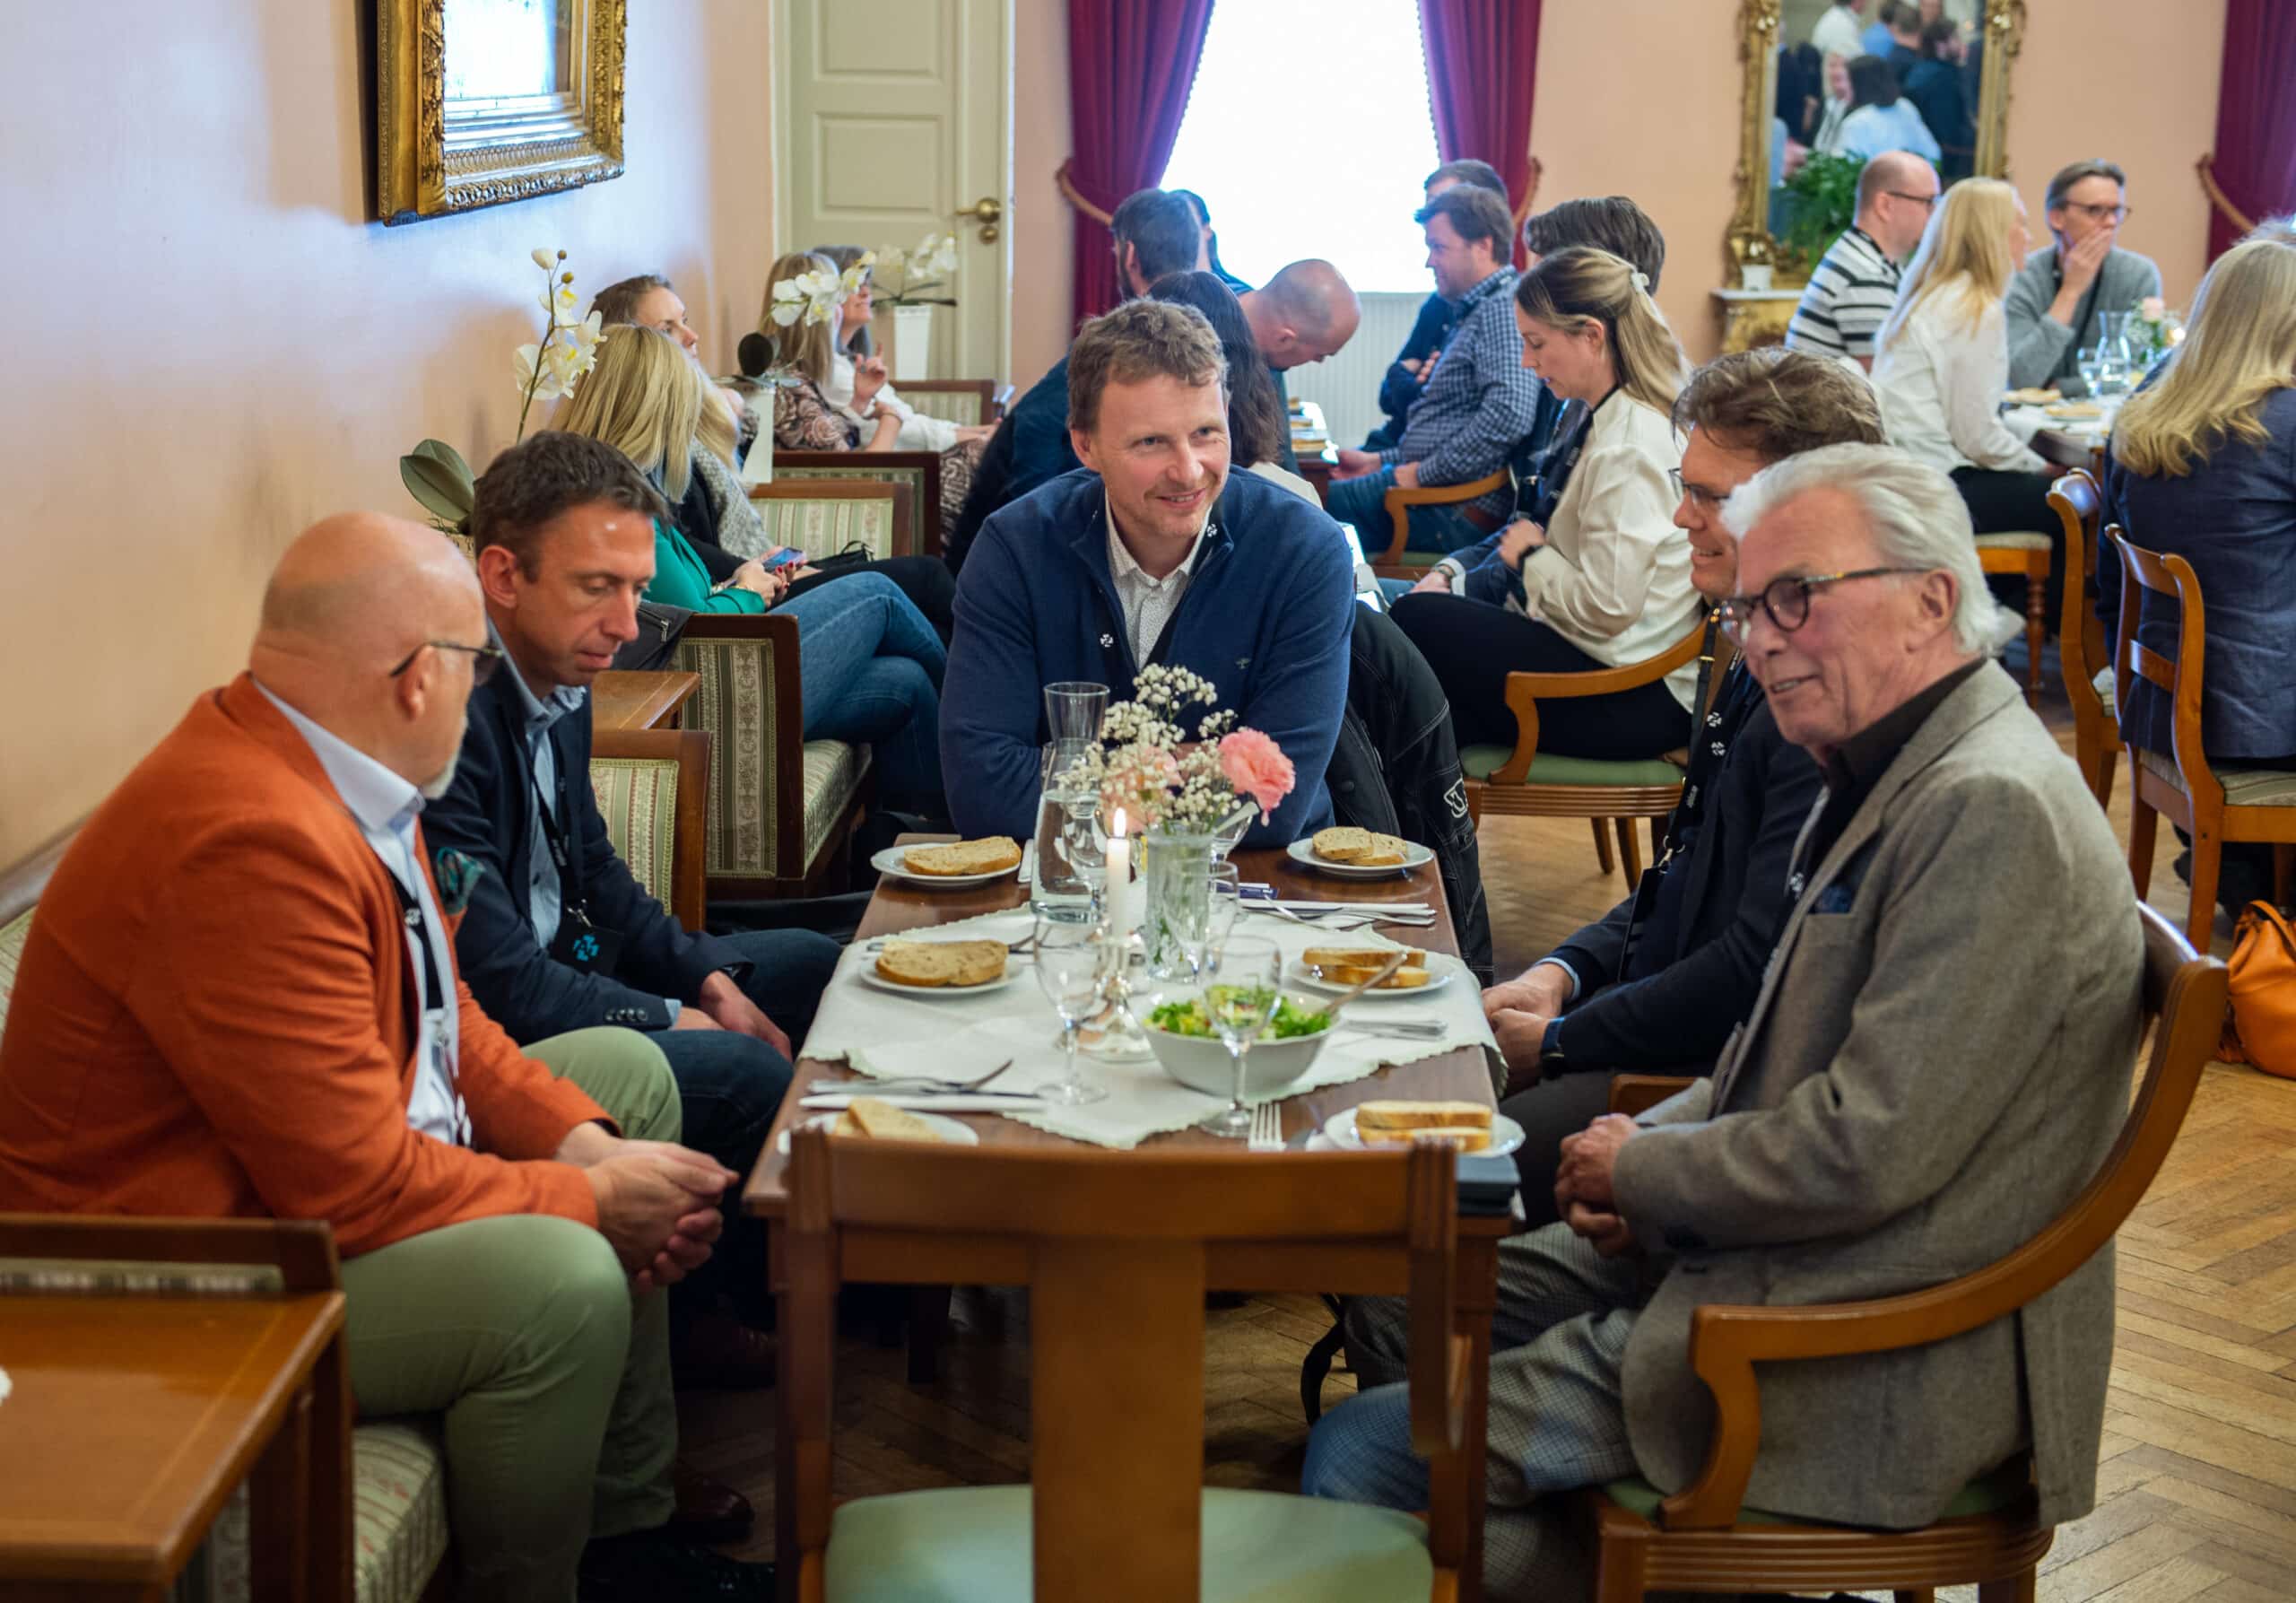 Lunch at Haldens Klub. PHOTO: Stein Johnsen, Contentvideo.no